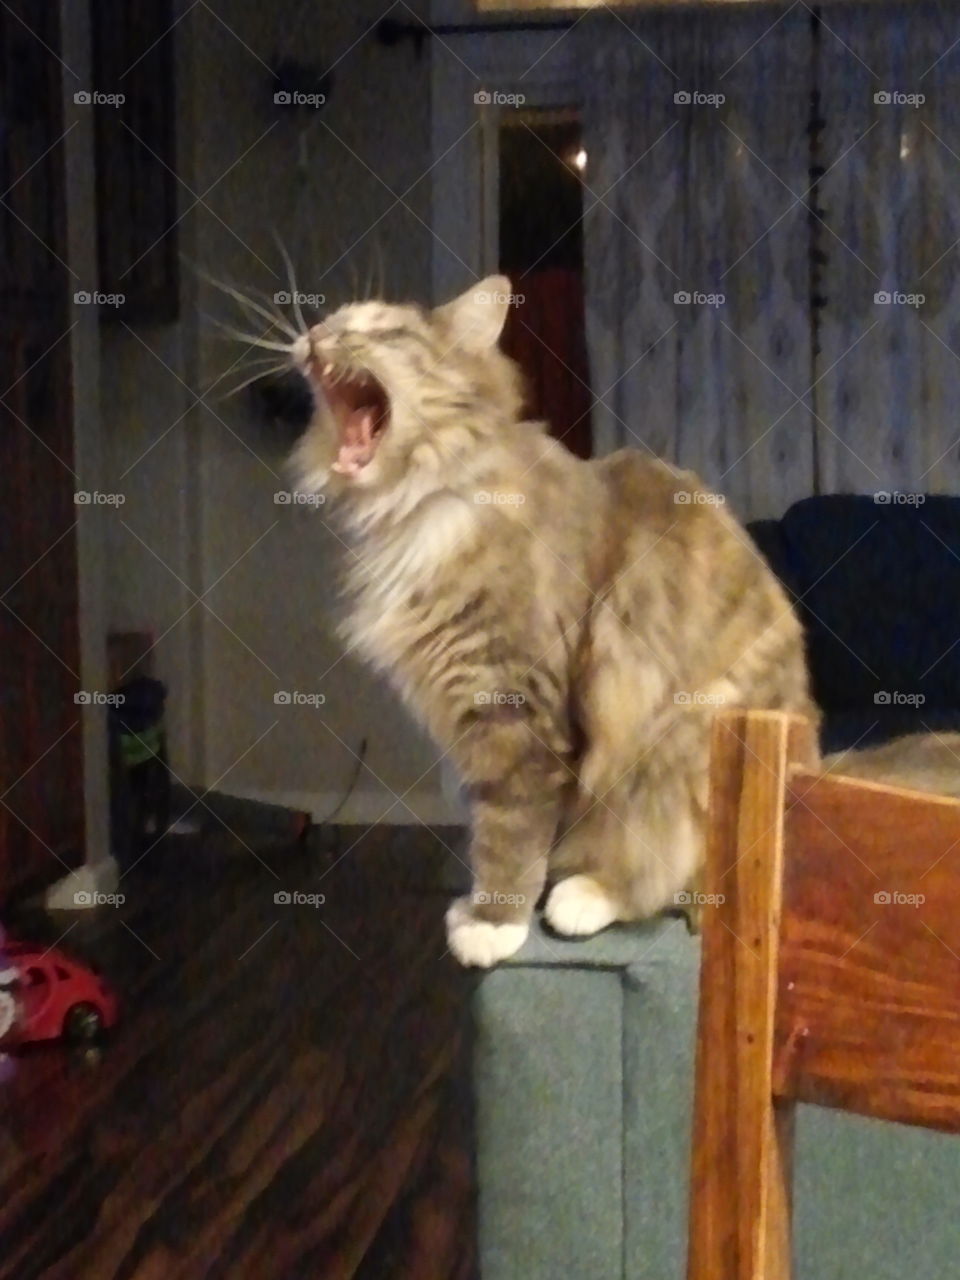 I am feline, hear me roar!